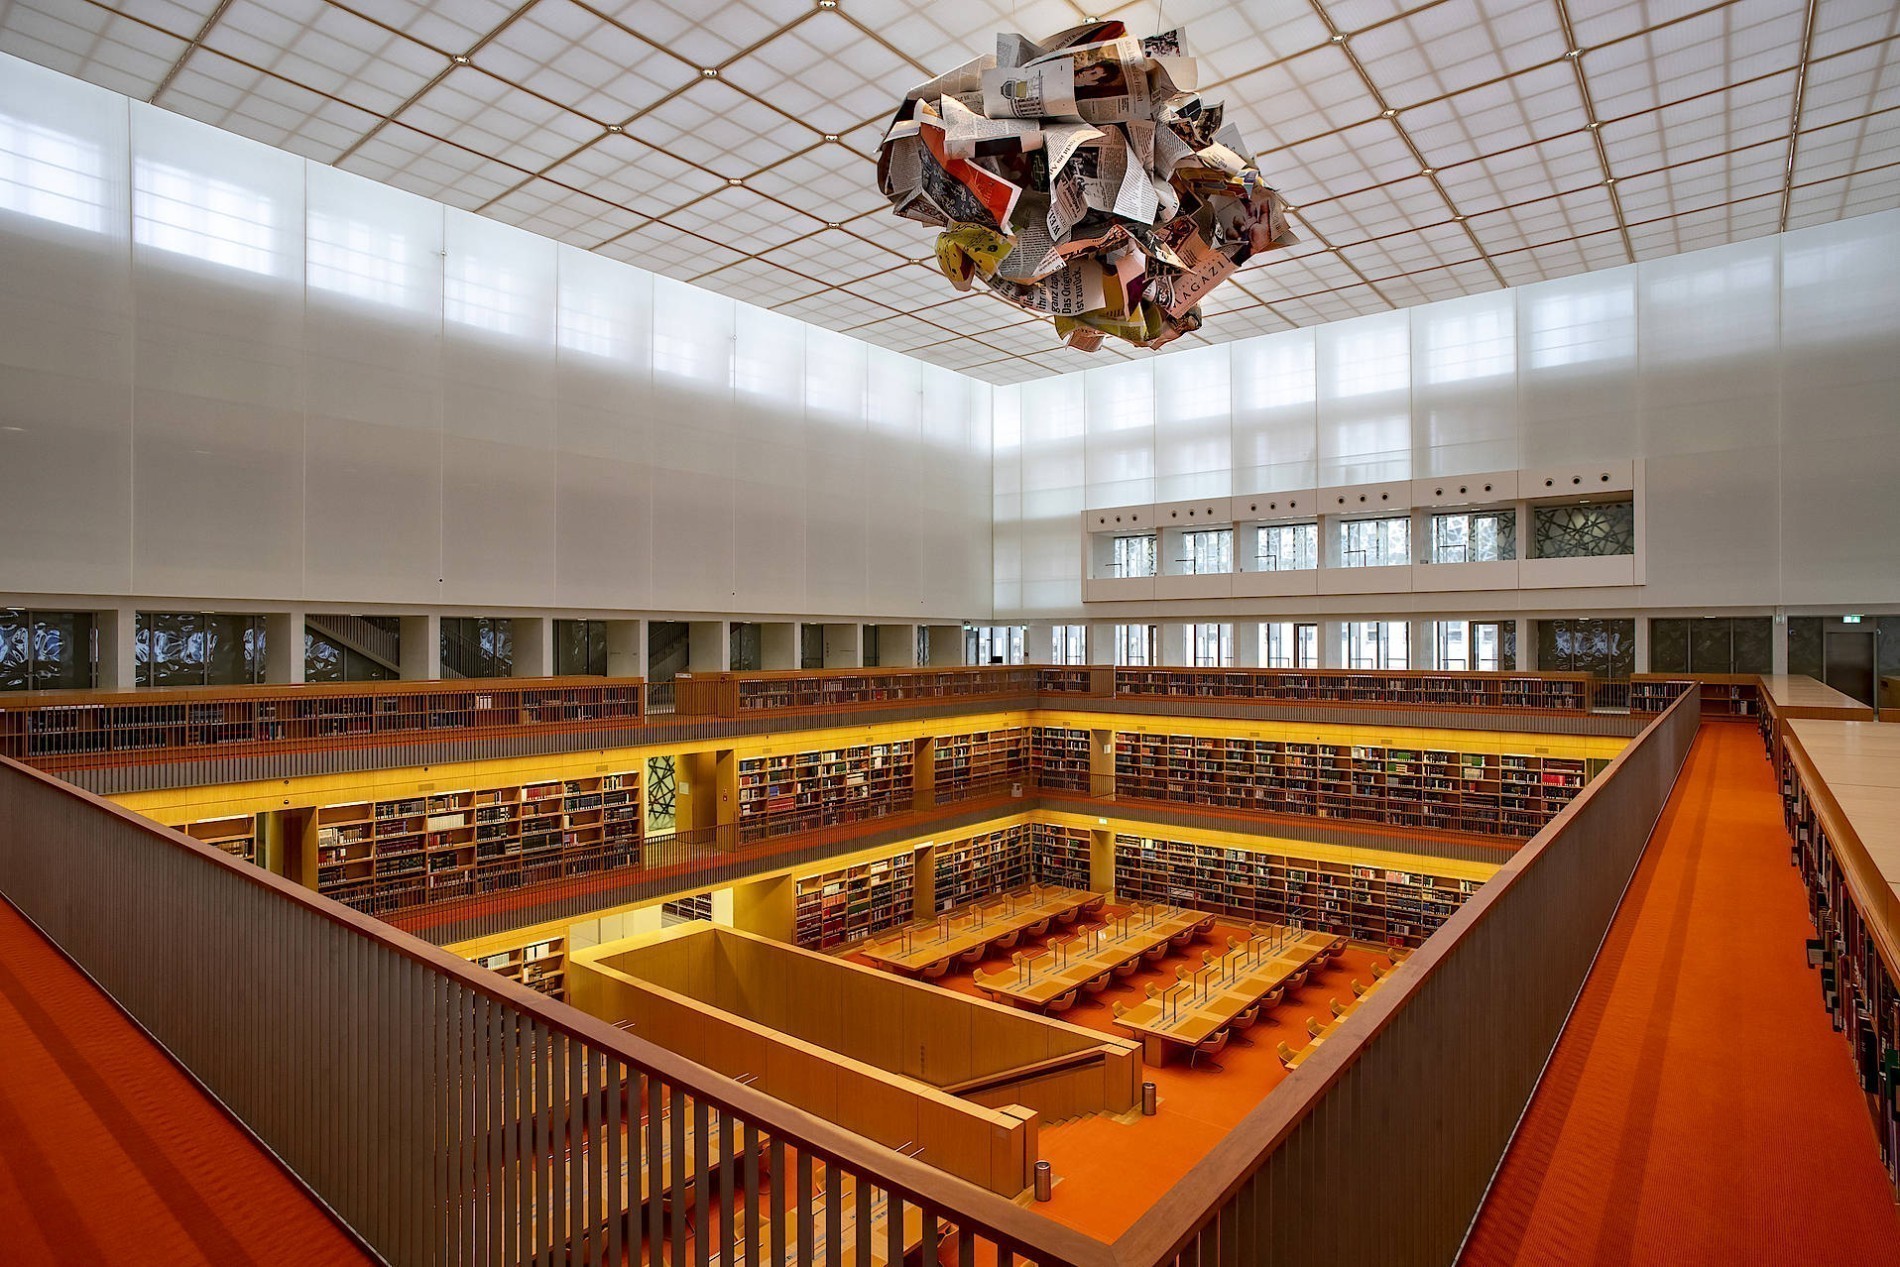 Αυτές είναι οι ωραιότερες βιβλιοθήκες στον κόσμο – Εκατομμύρια βιβλία σε ράφια χιλιομέτρων